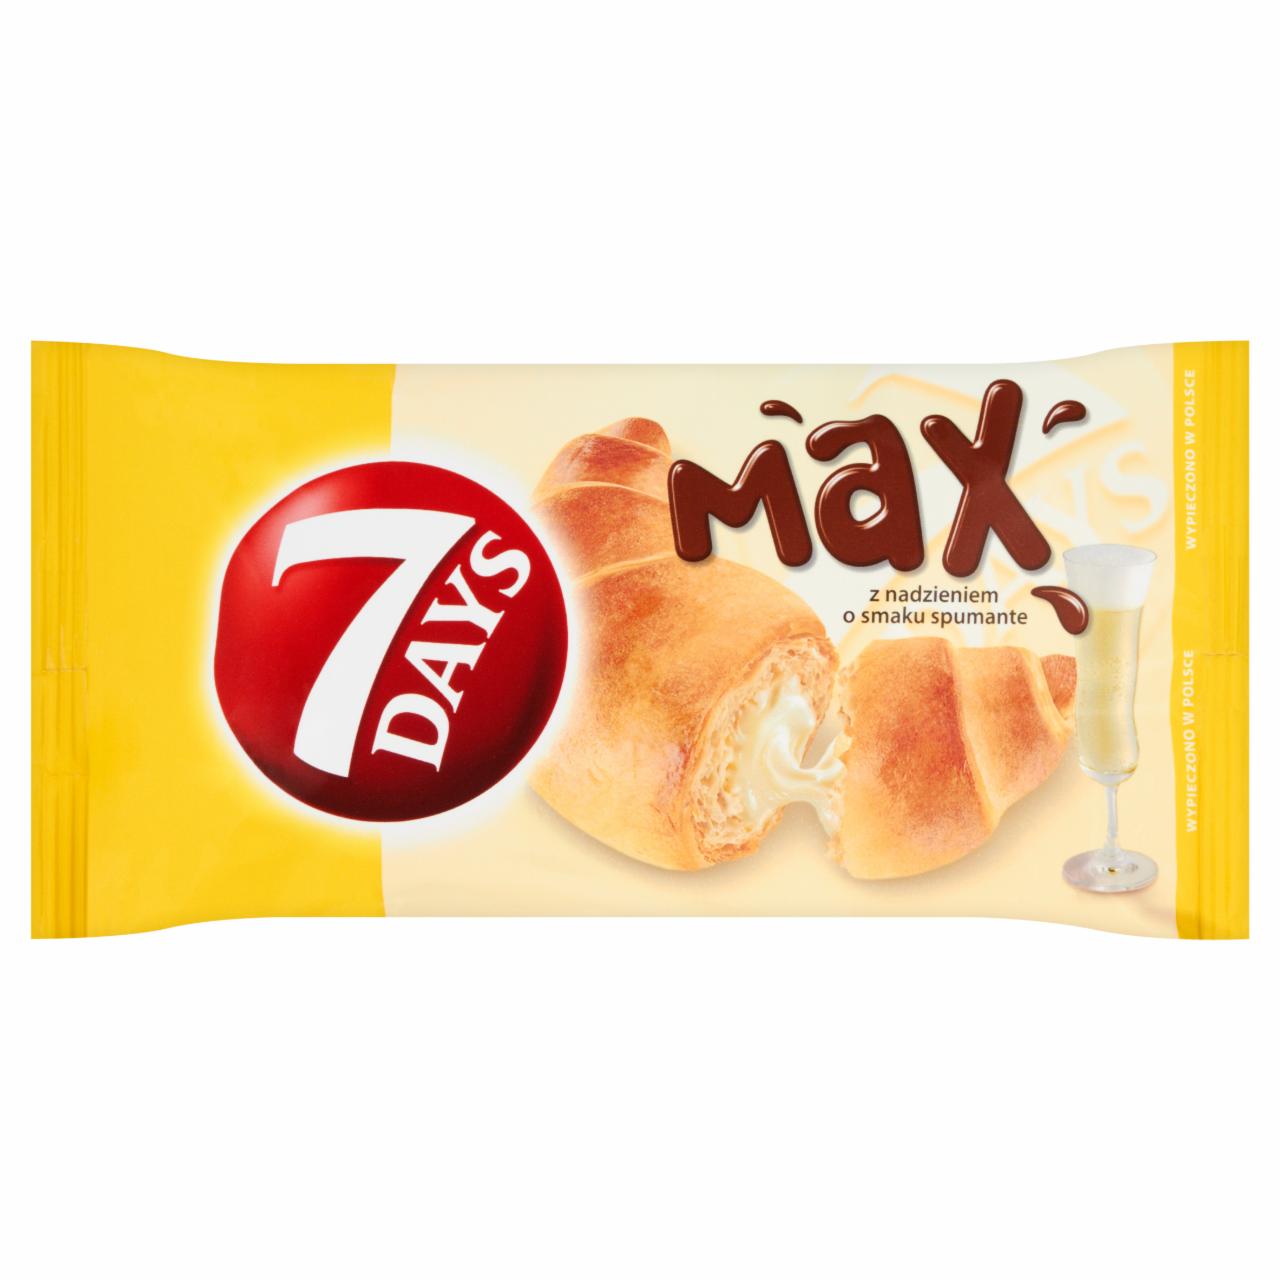 Zdjęcia - 7 Days Max Croissant z nadzieniem o smaku spumante 80 g